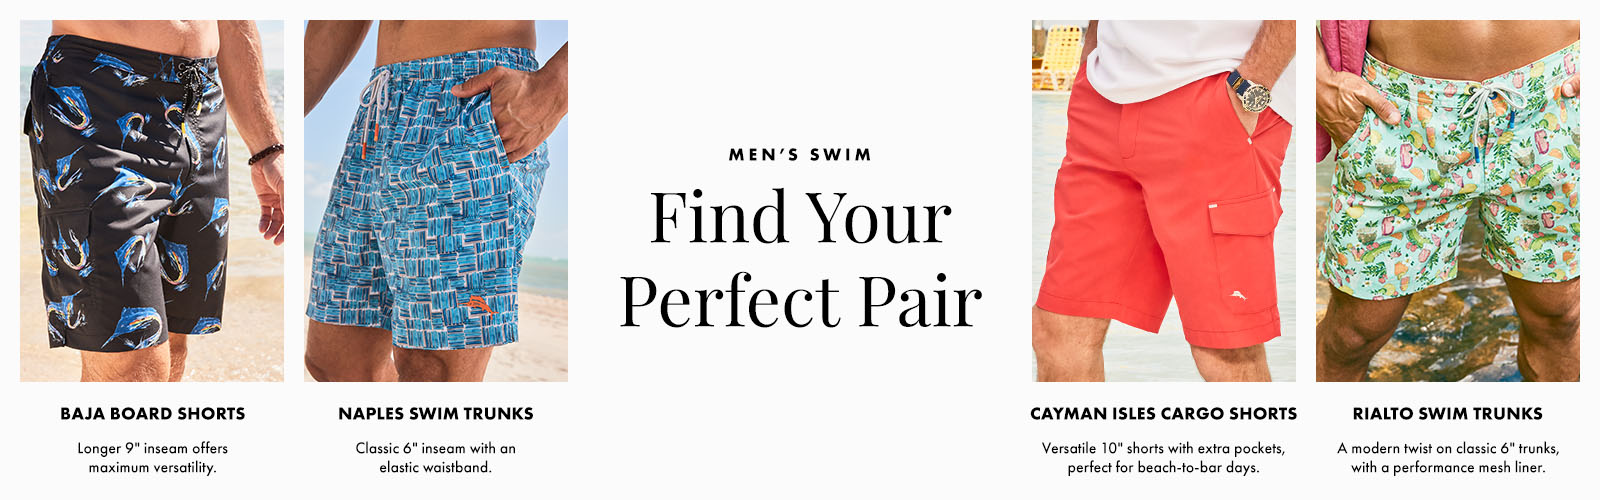 Men's Swim - Find Your Perfect Pair